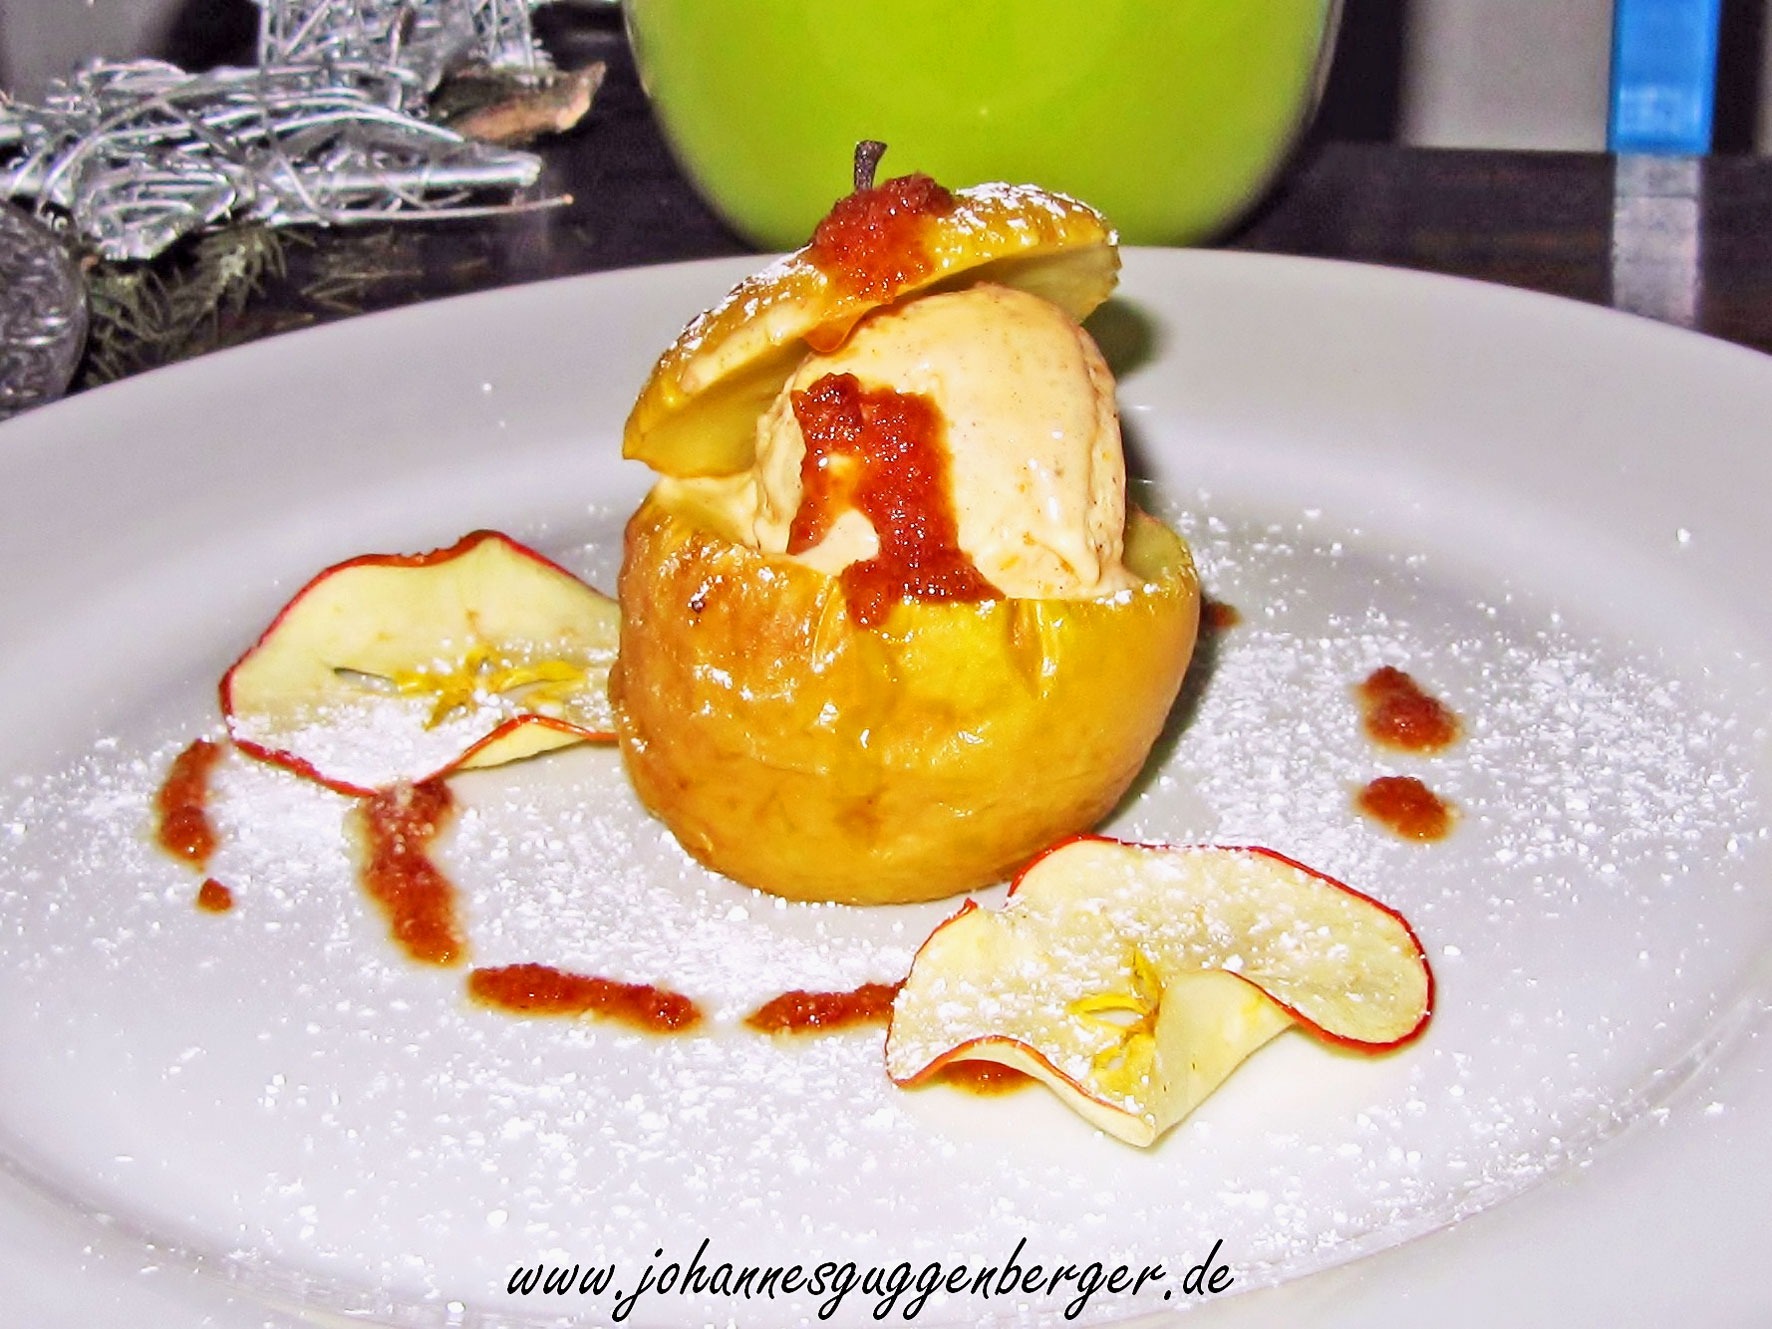 Bratapfel gefüllt mit Walnuss-Zimt-Parfait – Schmeck den Süden